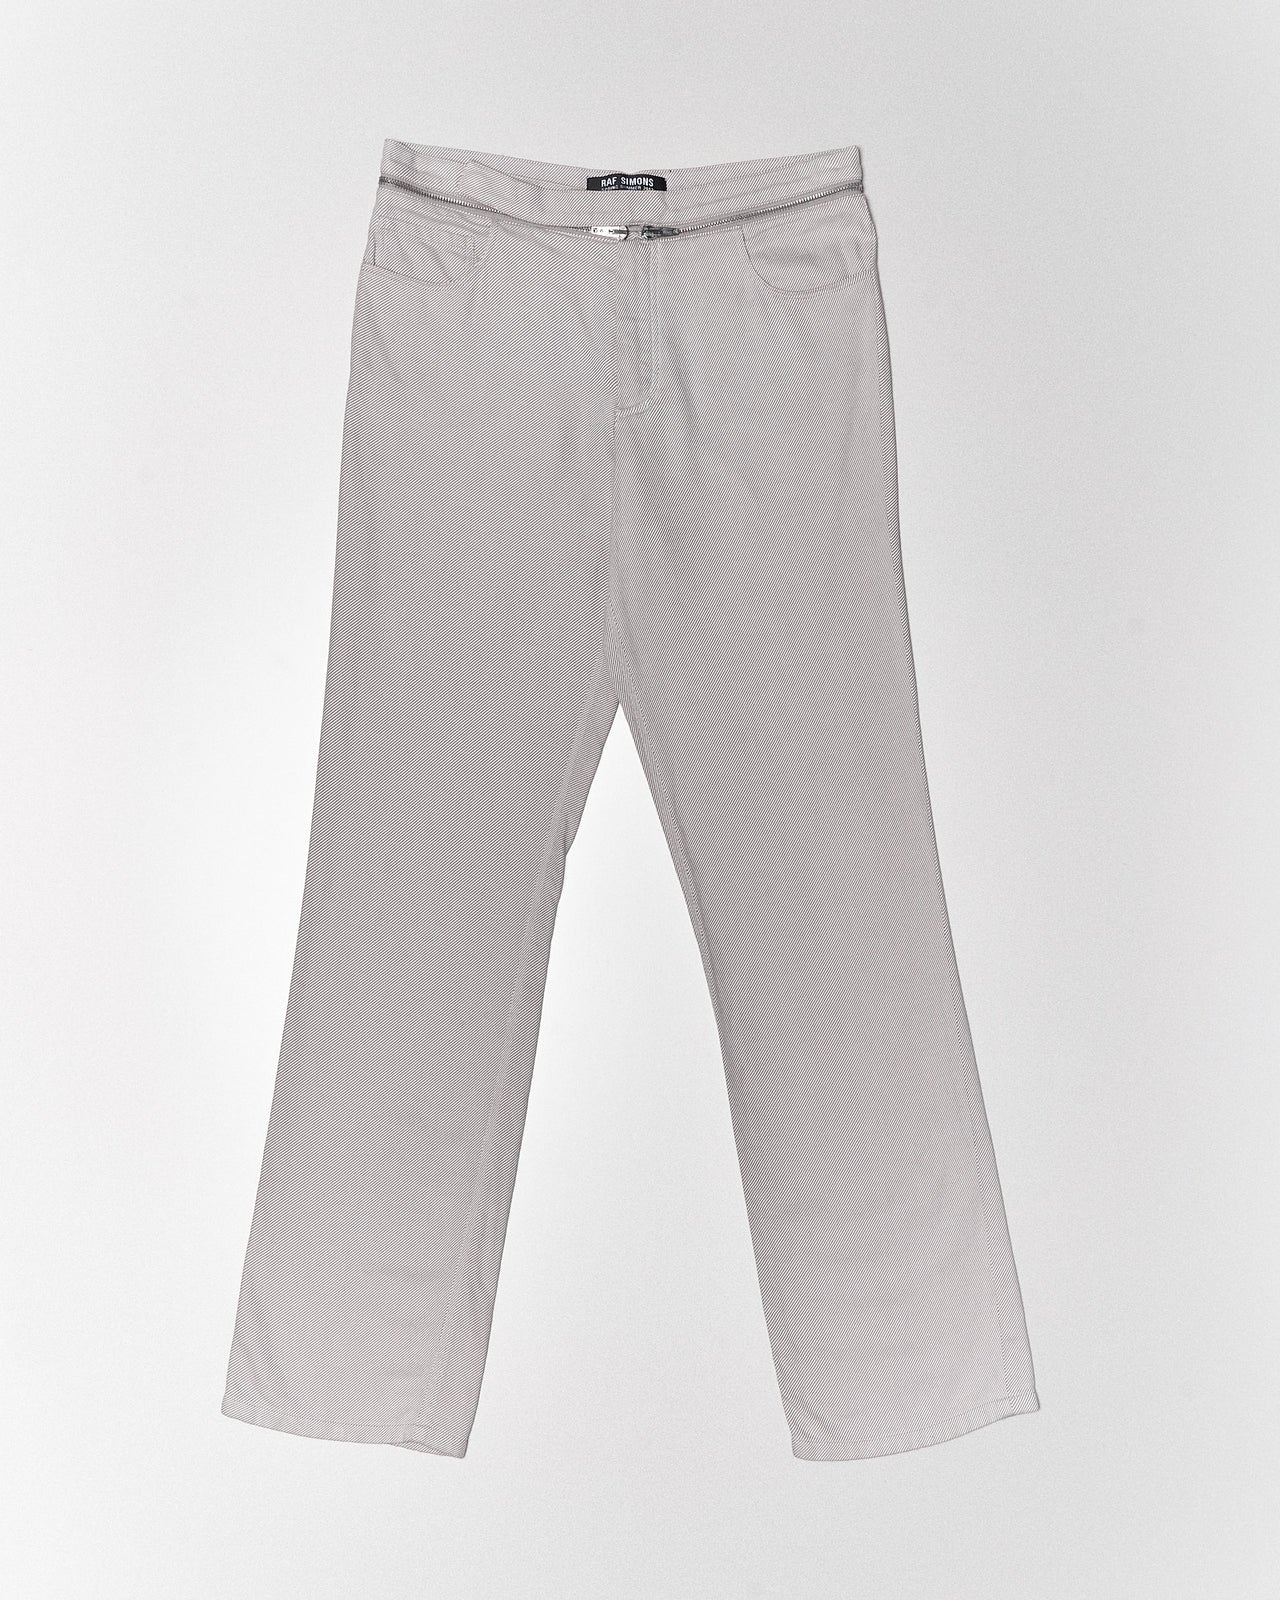 SS 2002 zipper belted pants